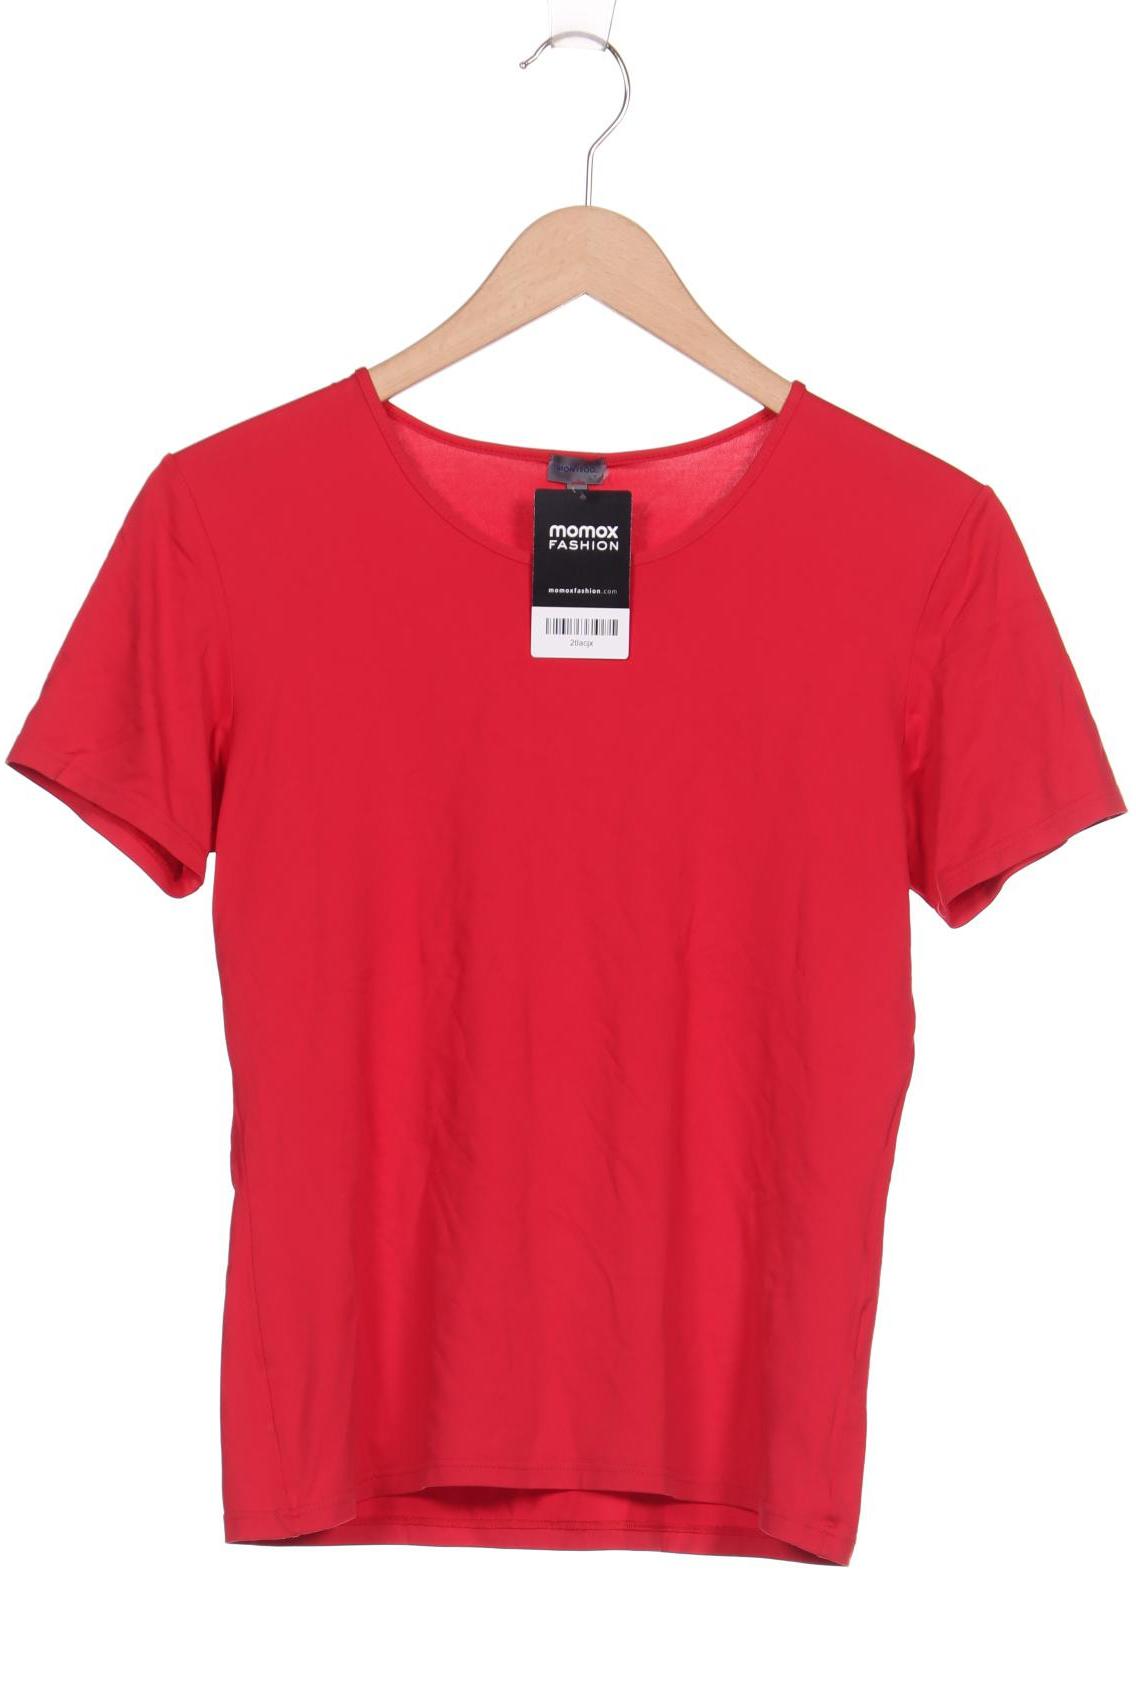 Montego Damen T-Shirt, rot von montego